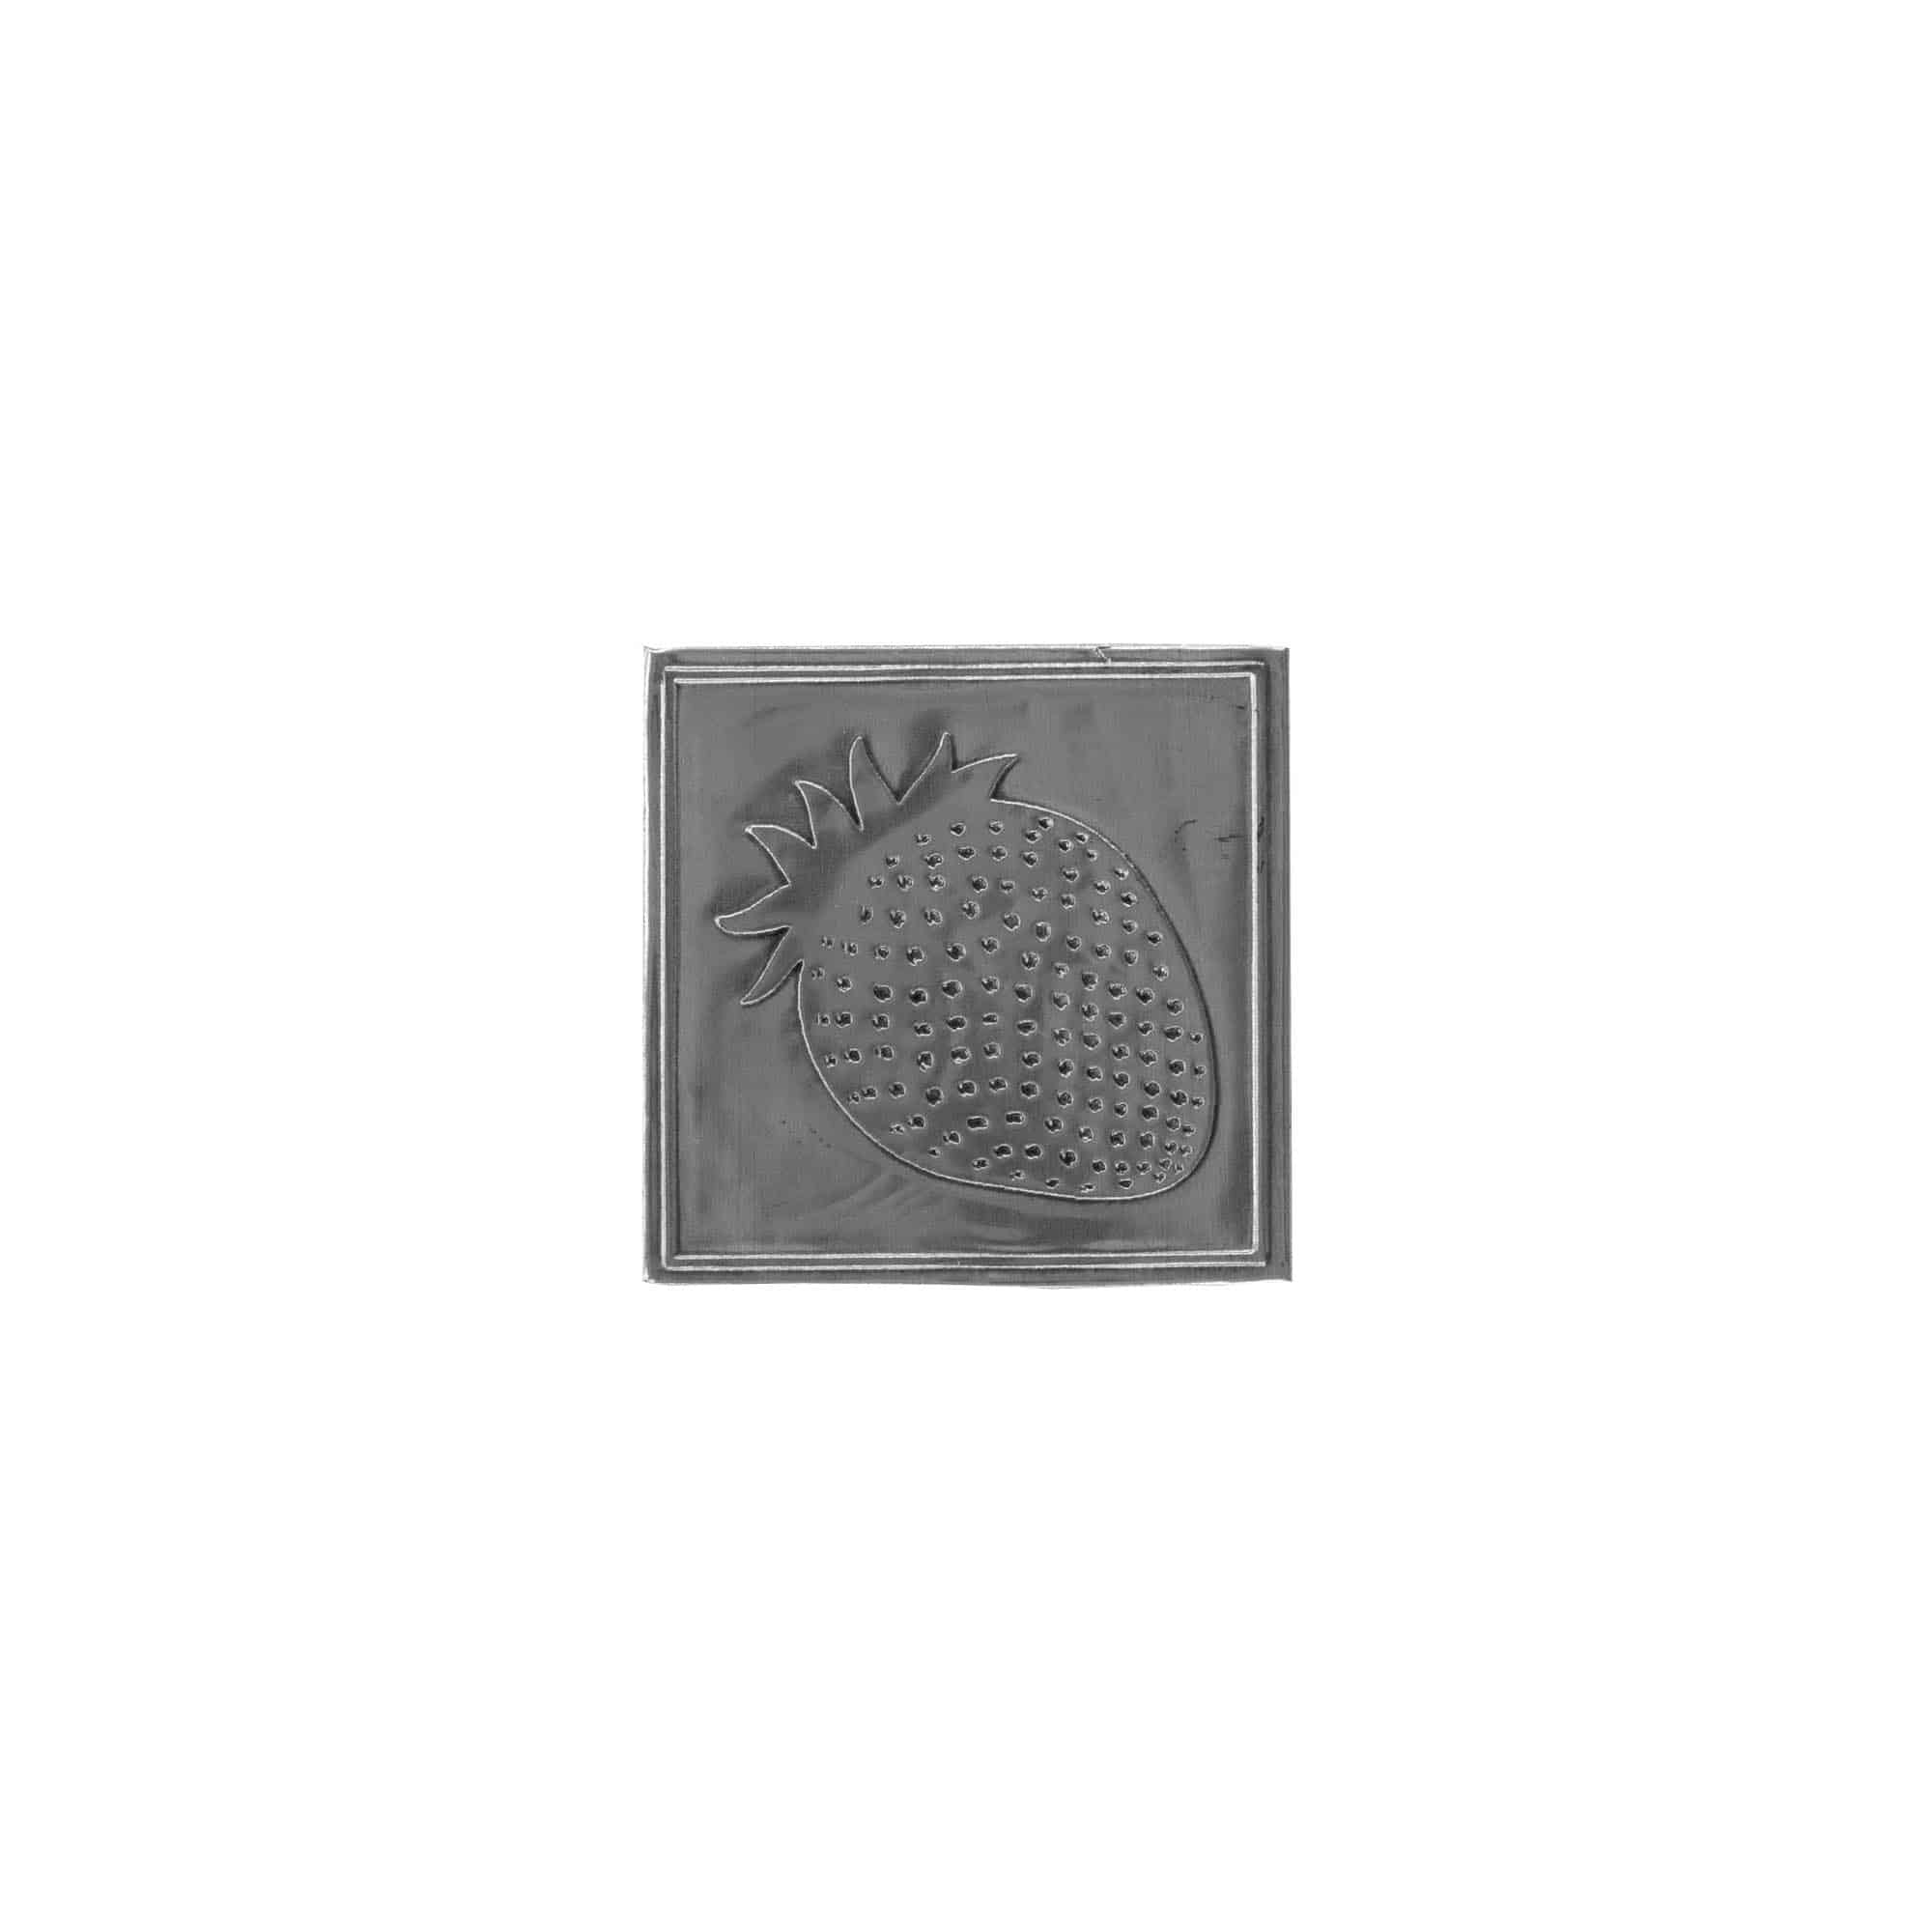 Etichetta metallica 'Fragole', quadrata, stagno, argento